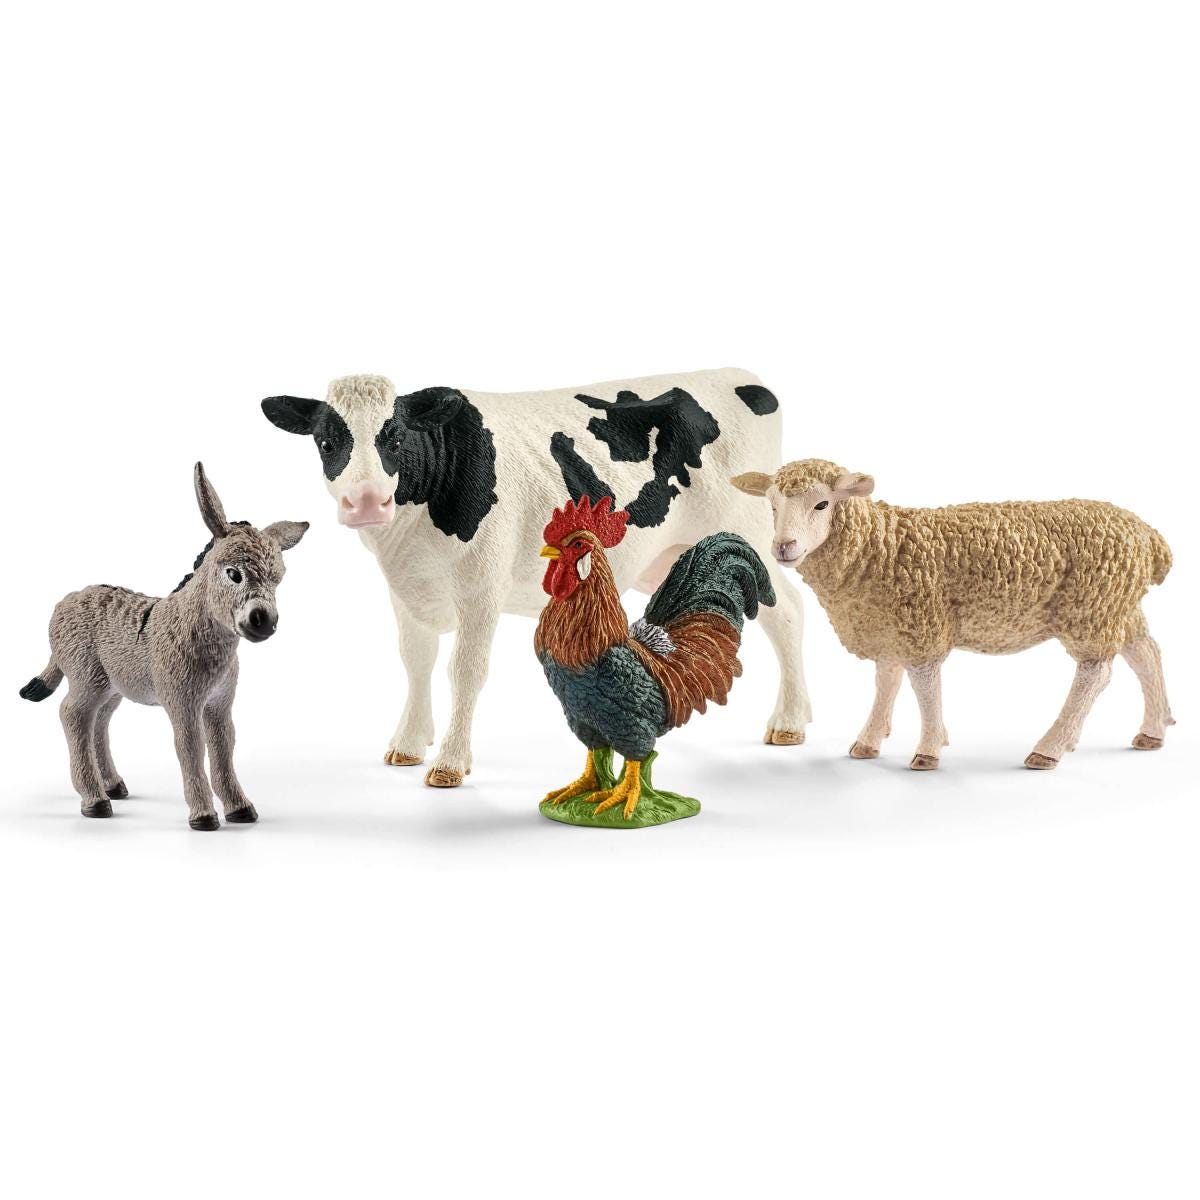 Schleich Mini animaux Mini Tiere Complete Set 61-70 P Animaux de la ferme  Modèles hors production vintage verzamelobjecten -  France